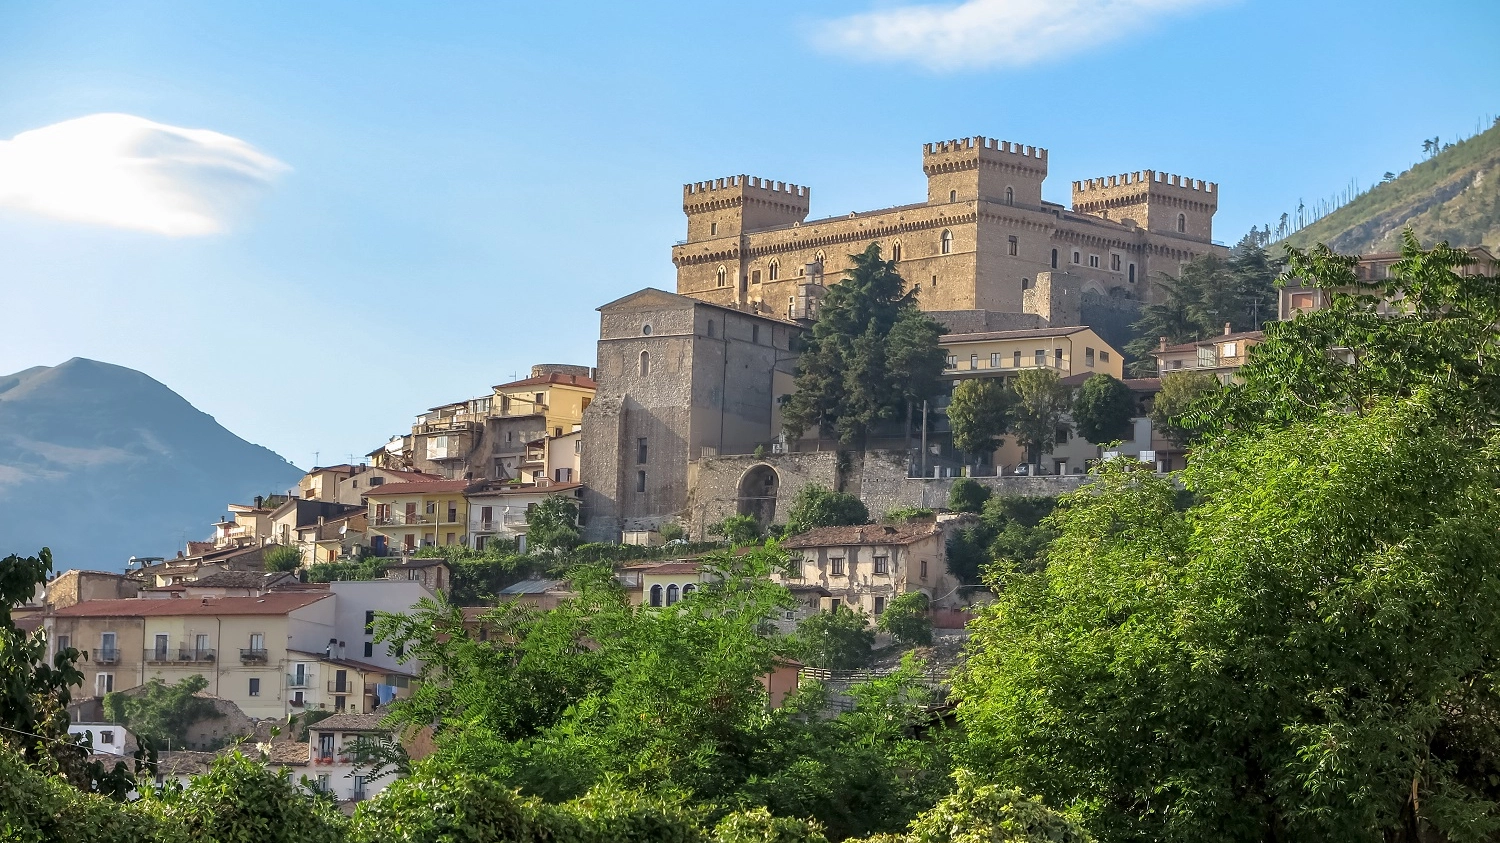 Commune of Celano and Piccolomini Castle